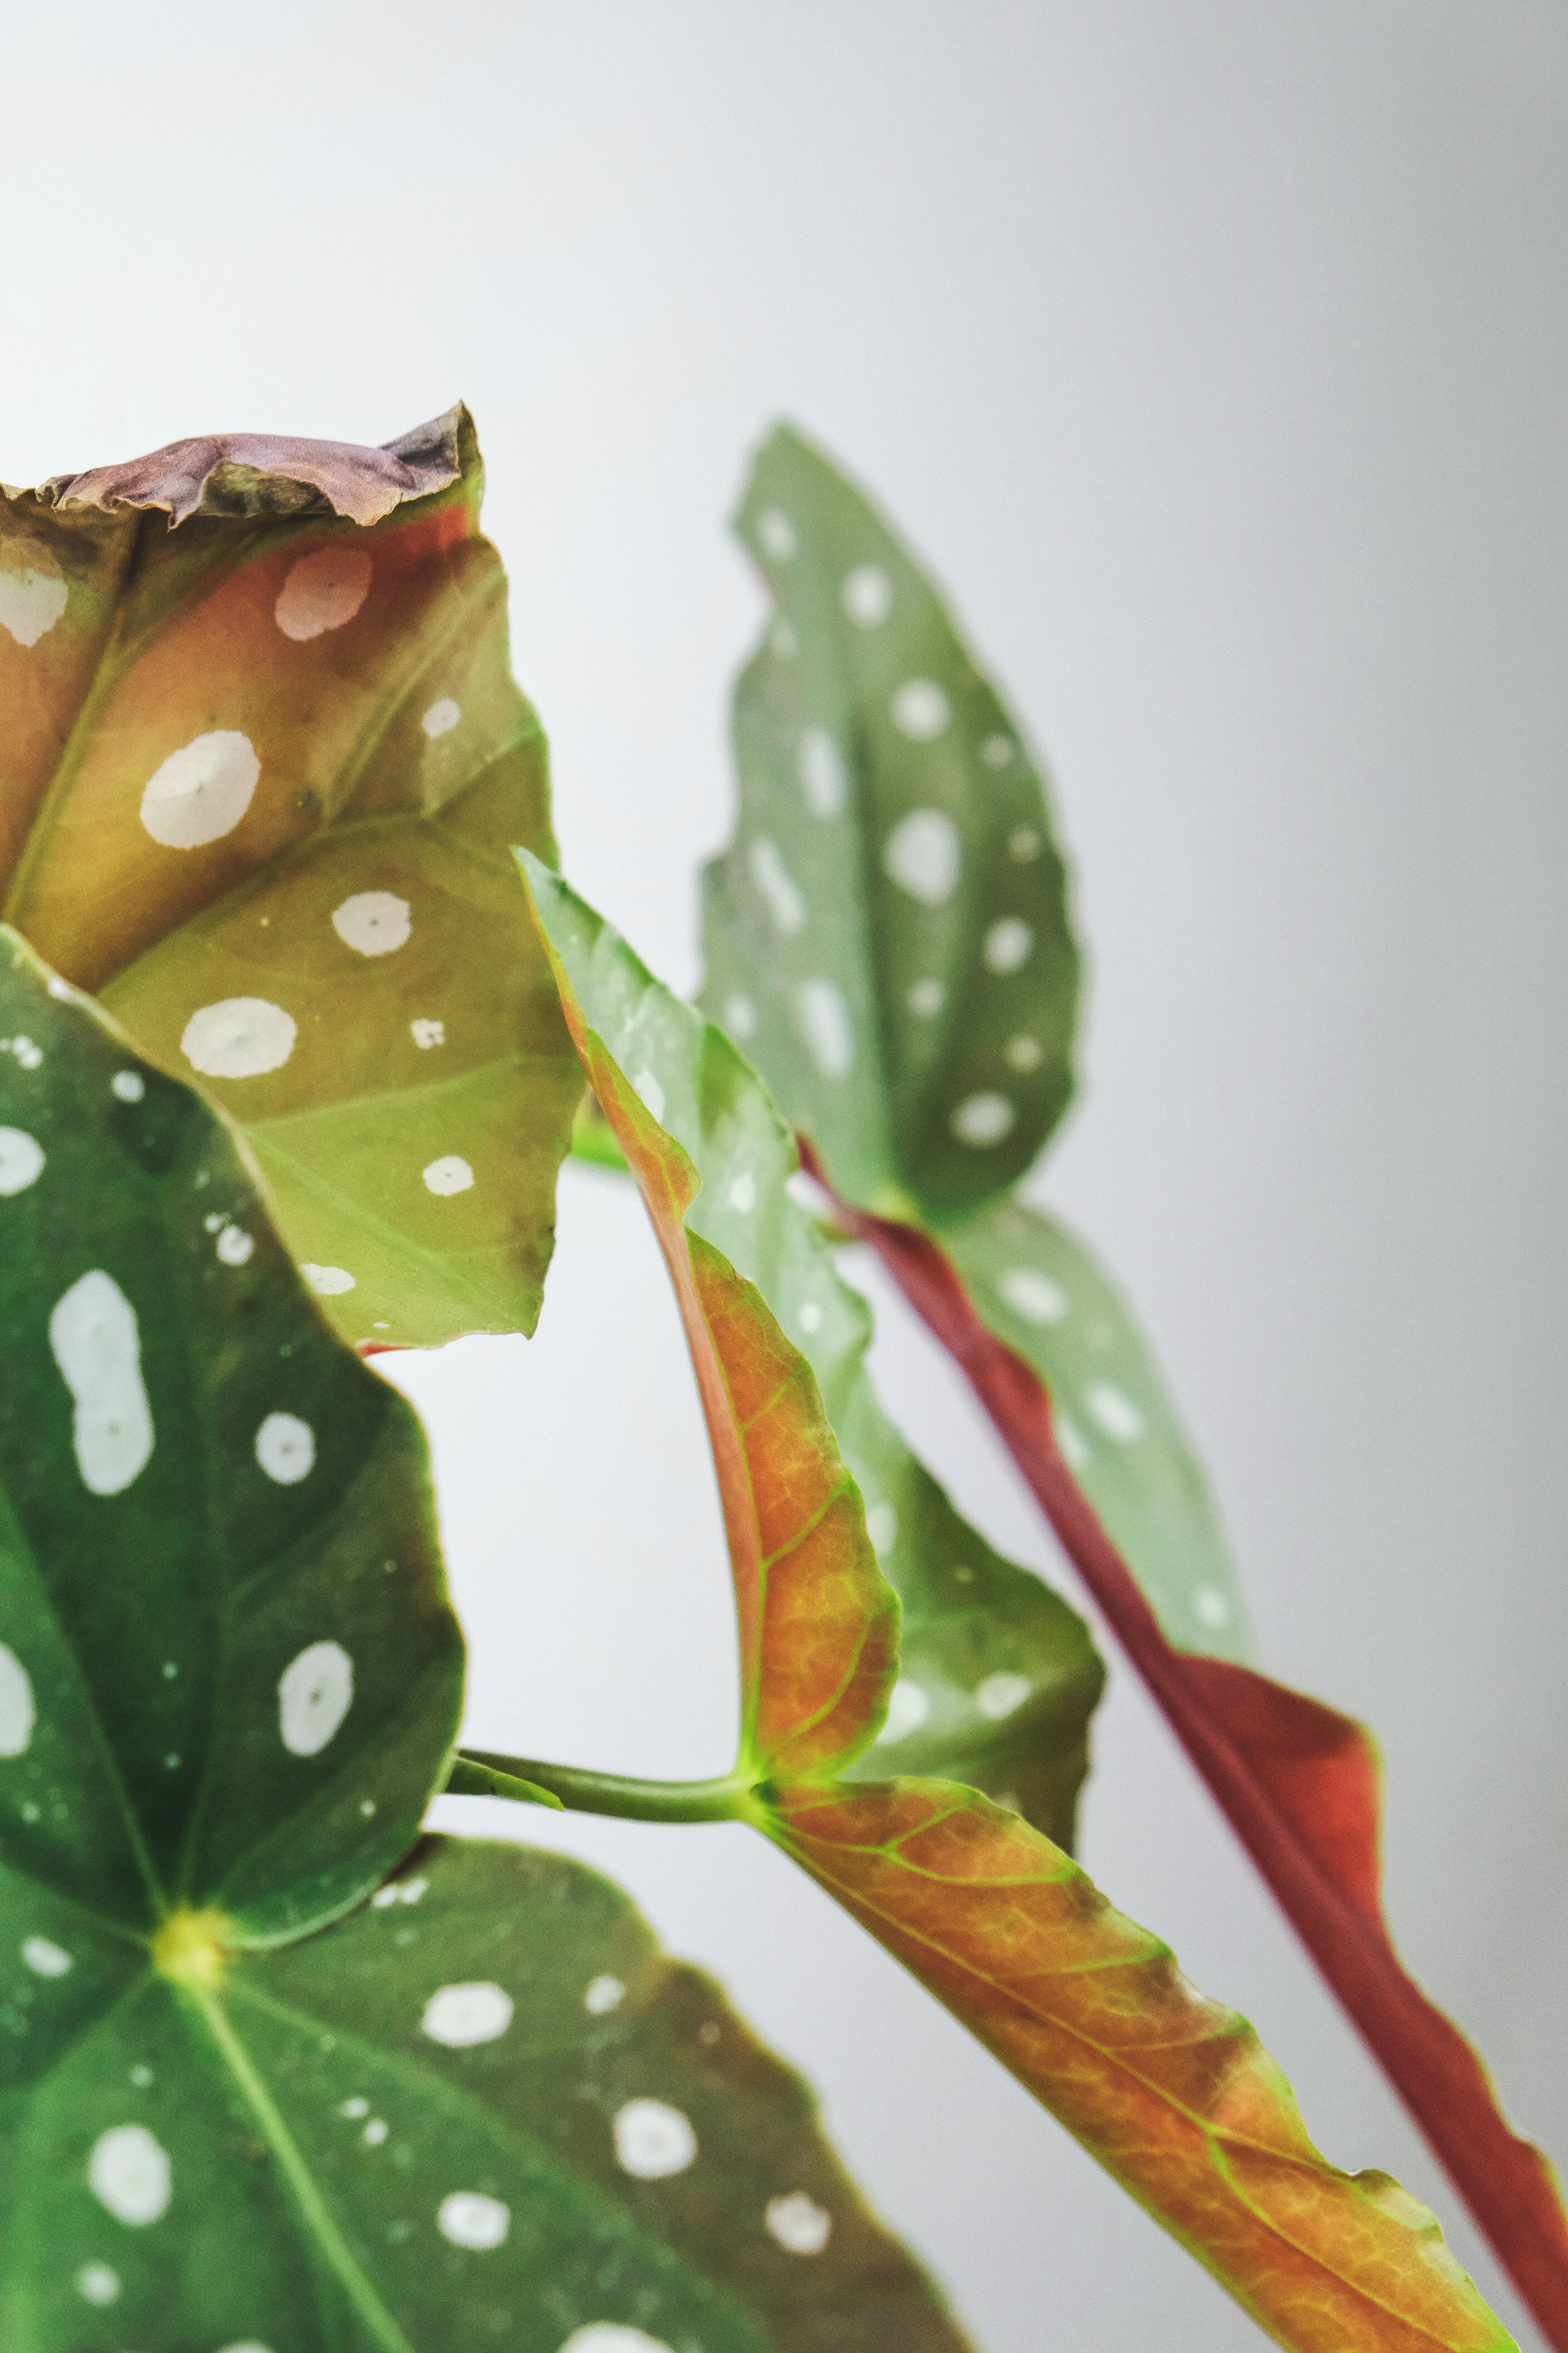 Begonia Cuidados: La Mejor Manera de Mantenerlas – nāu green